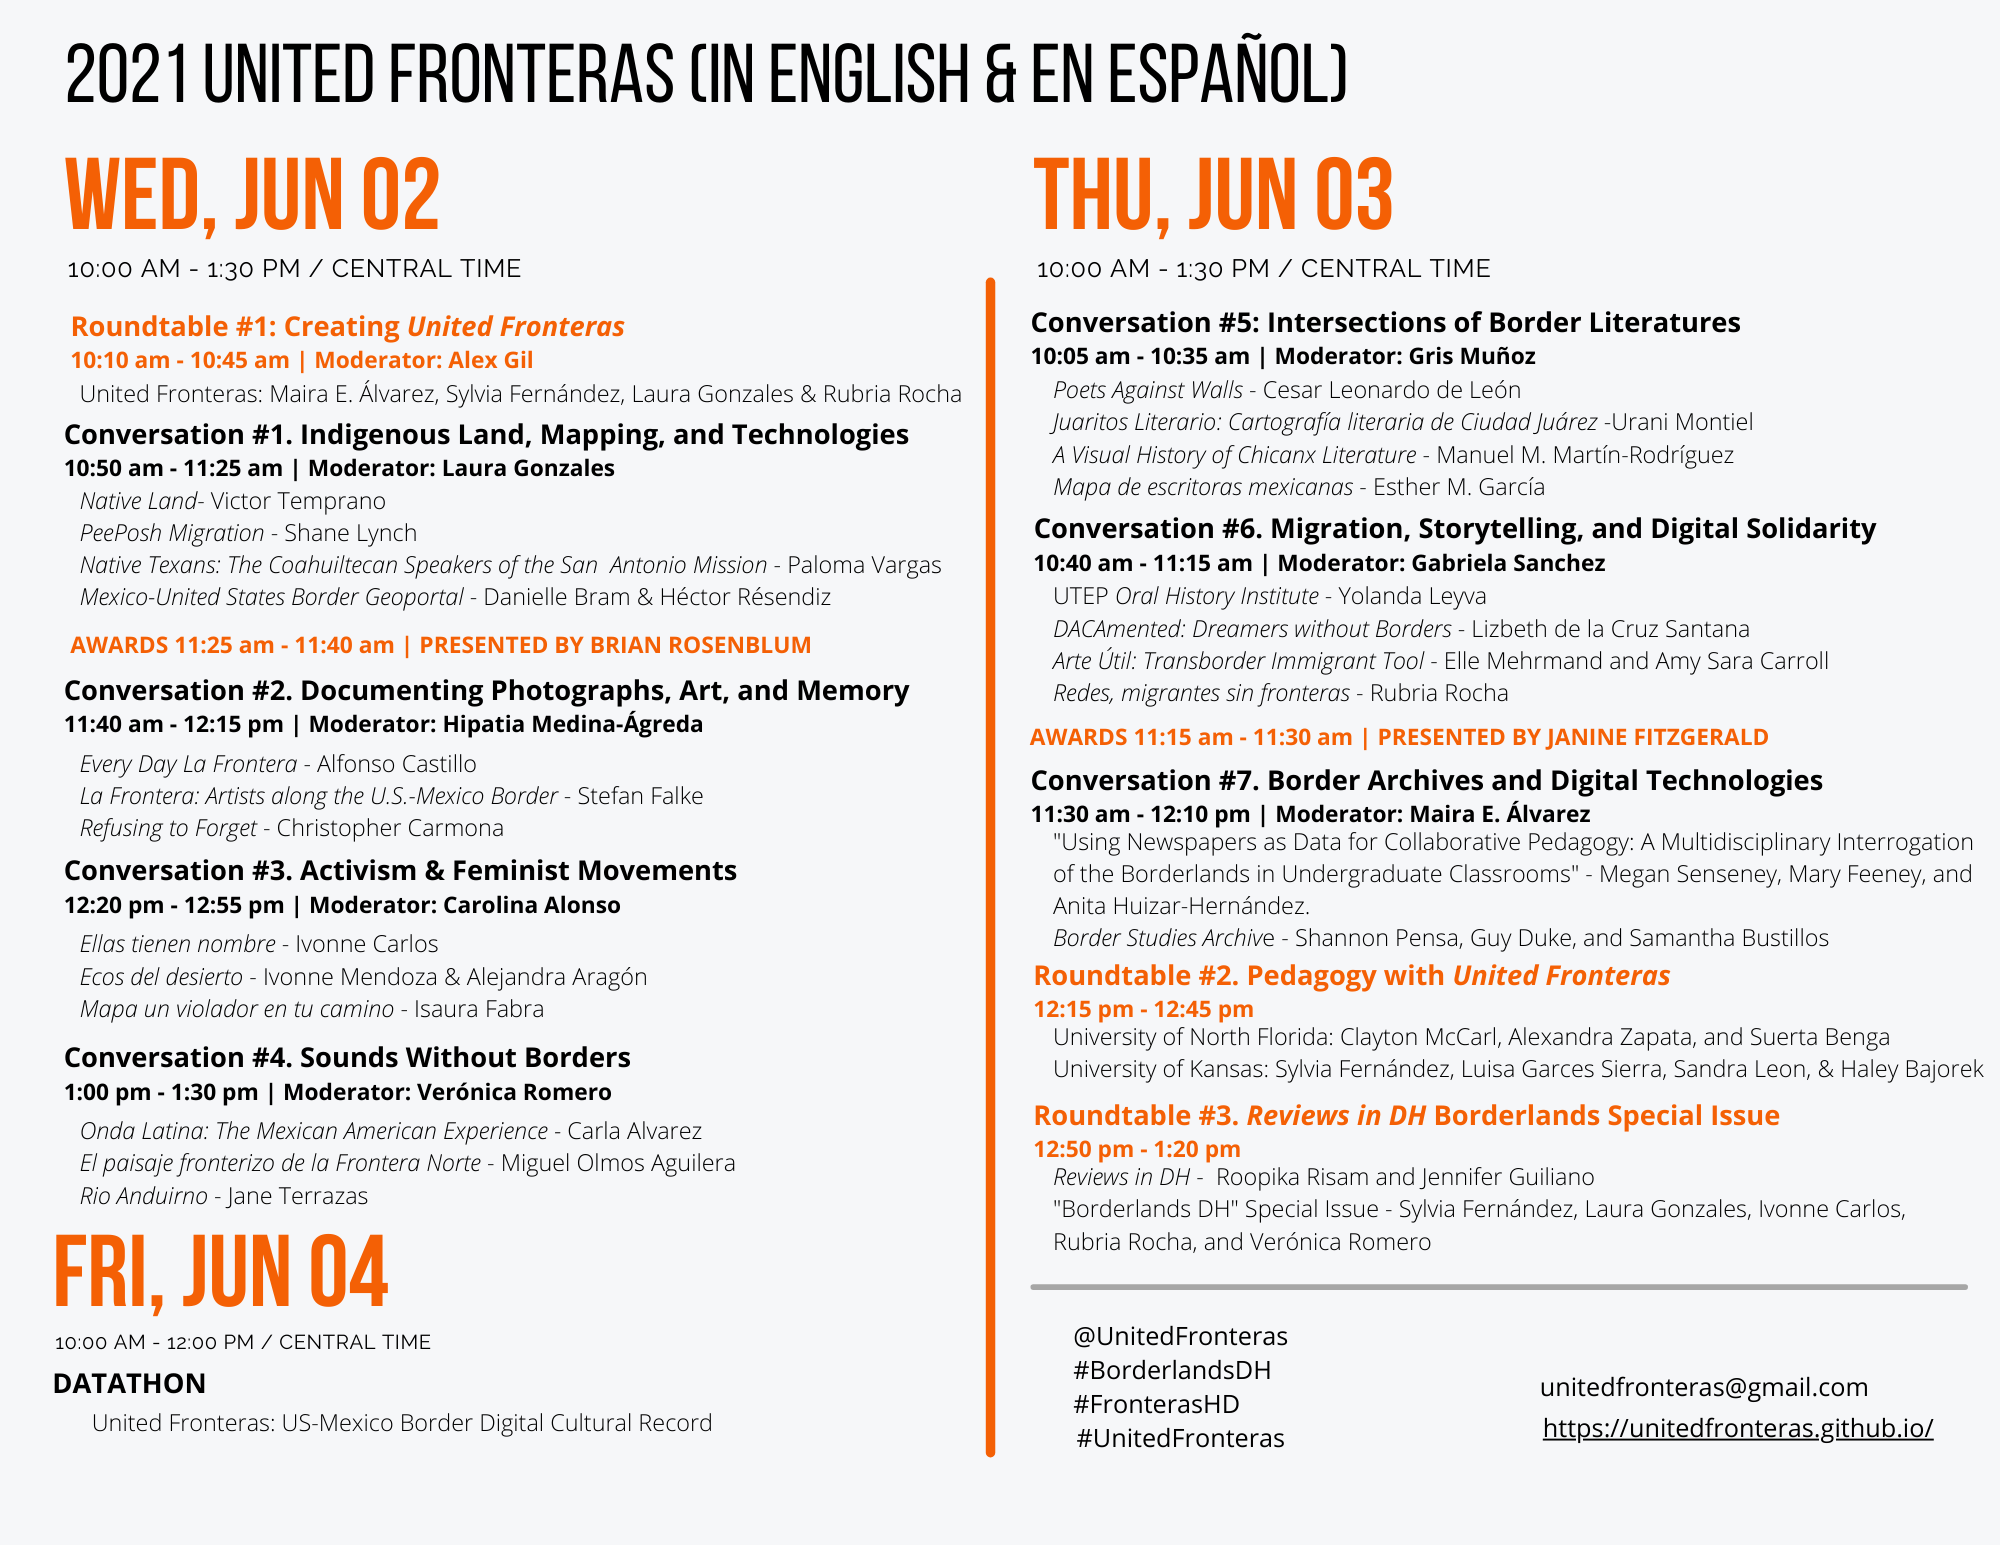 United Fronteras Symposium 2021